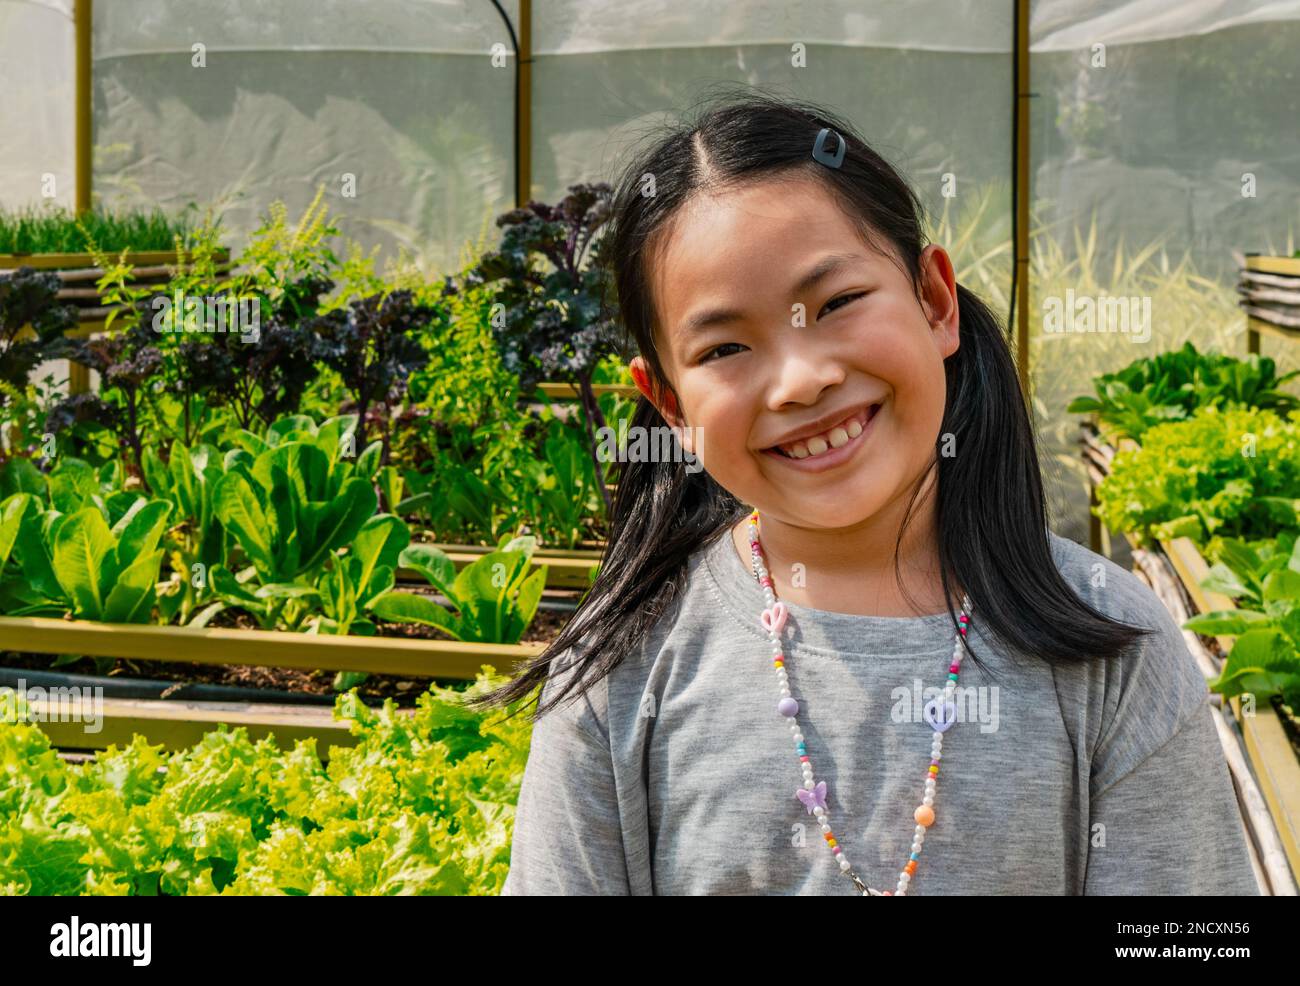 Ritratto di ragazza asiatica cute bambino in una serra vegetale organica, grande sorridente, occhi guardando la macchina fotografica, capelli lunghi neri con coda di cavallo. Foto Stock